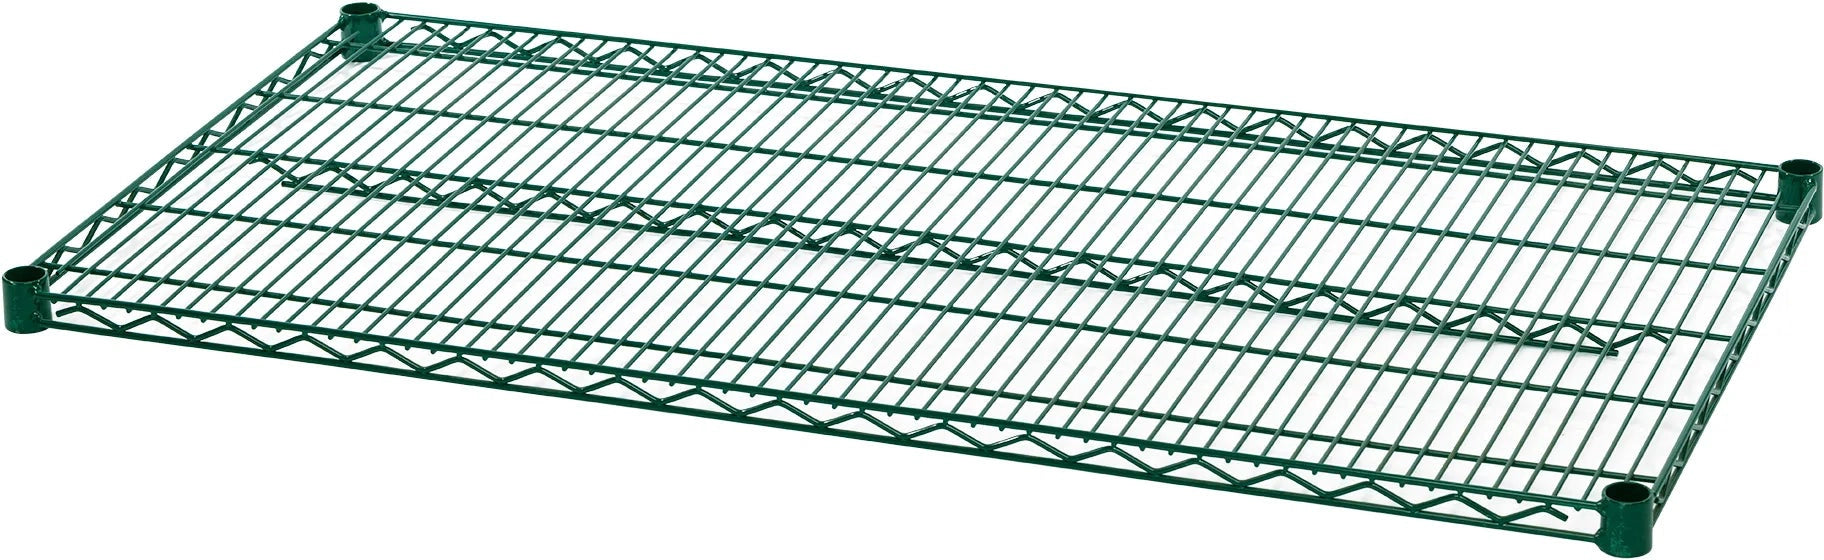 Julien - Rosko 42" x 24" Shelf for Wire Shelving, Green Epoxy - RO-WS-S4224-GE